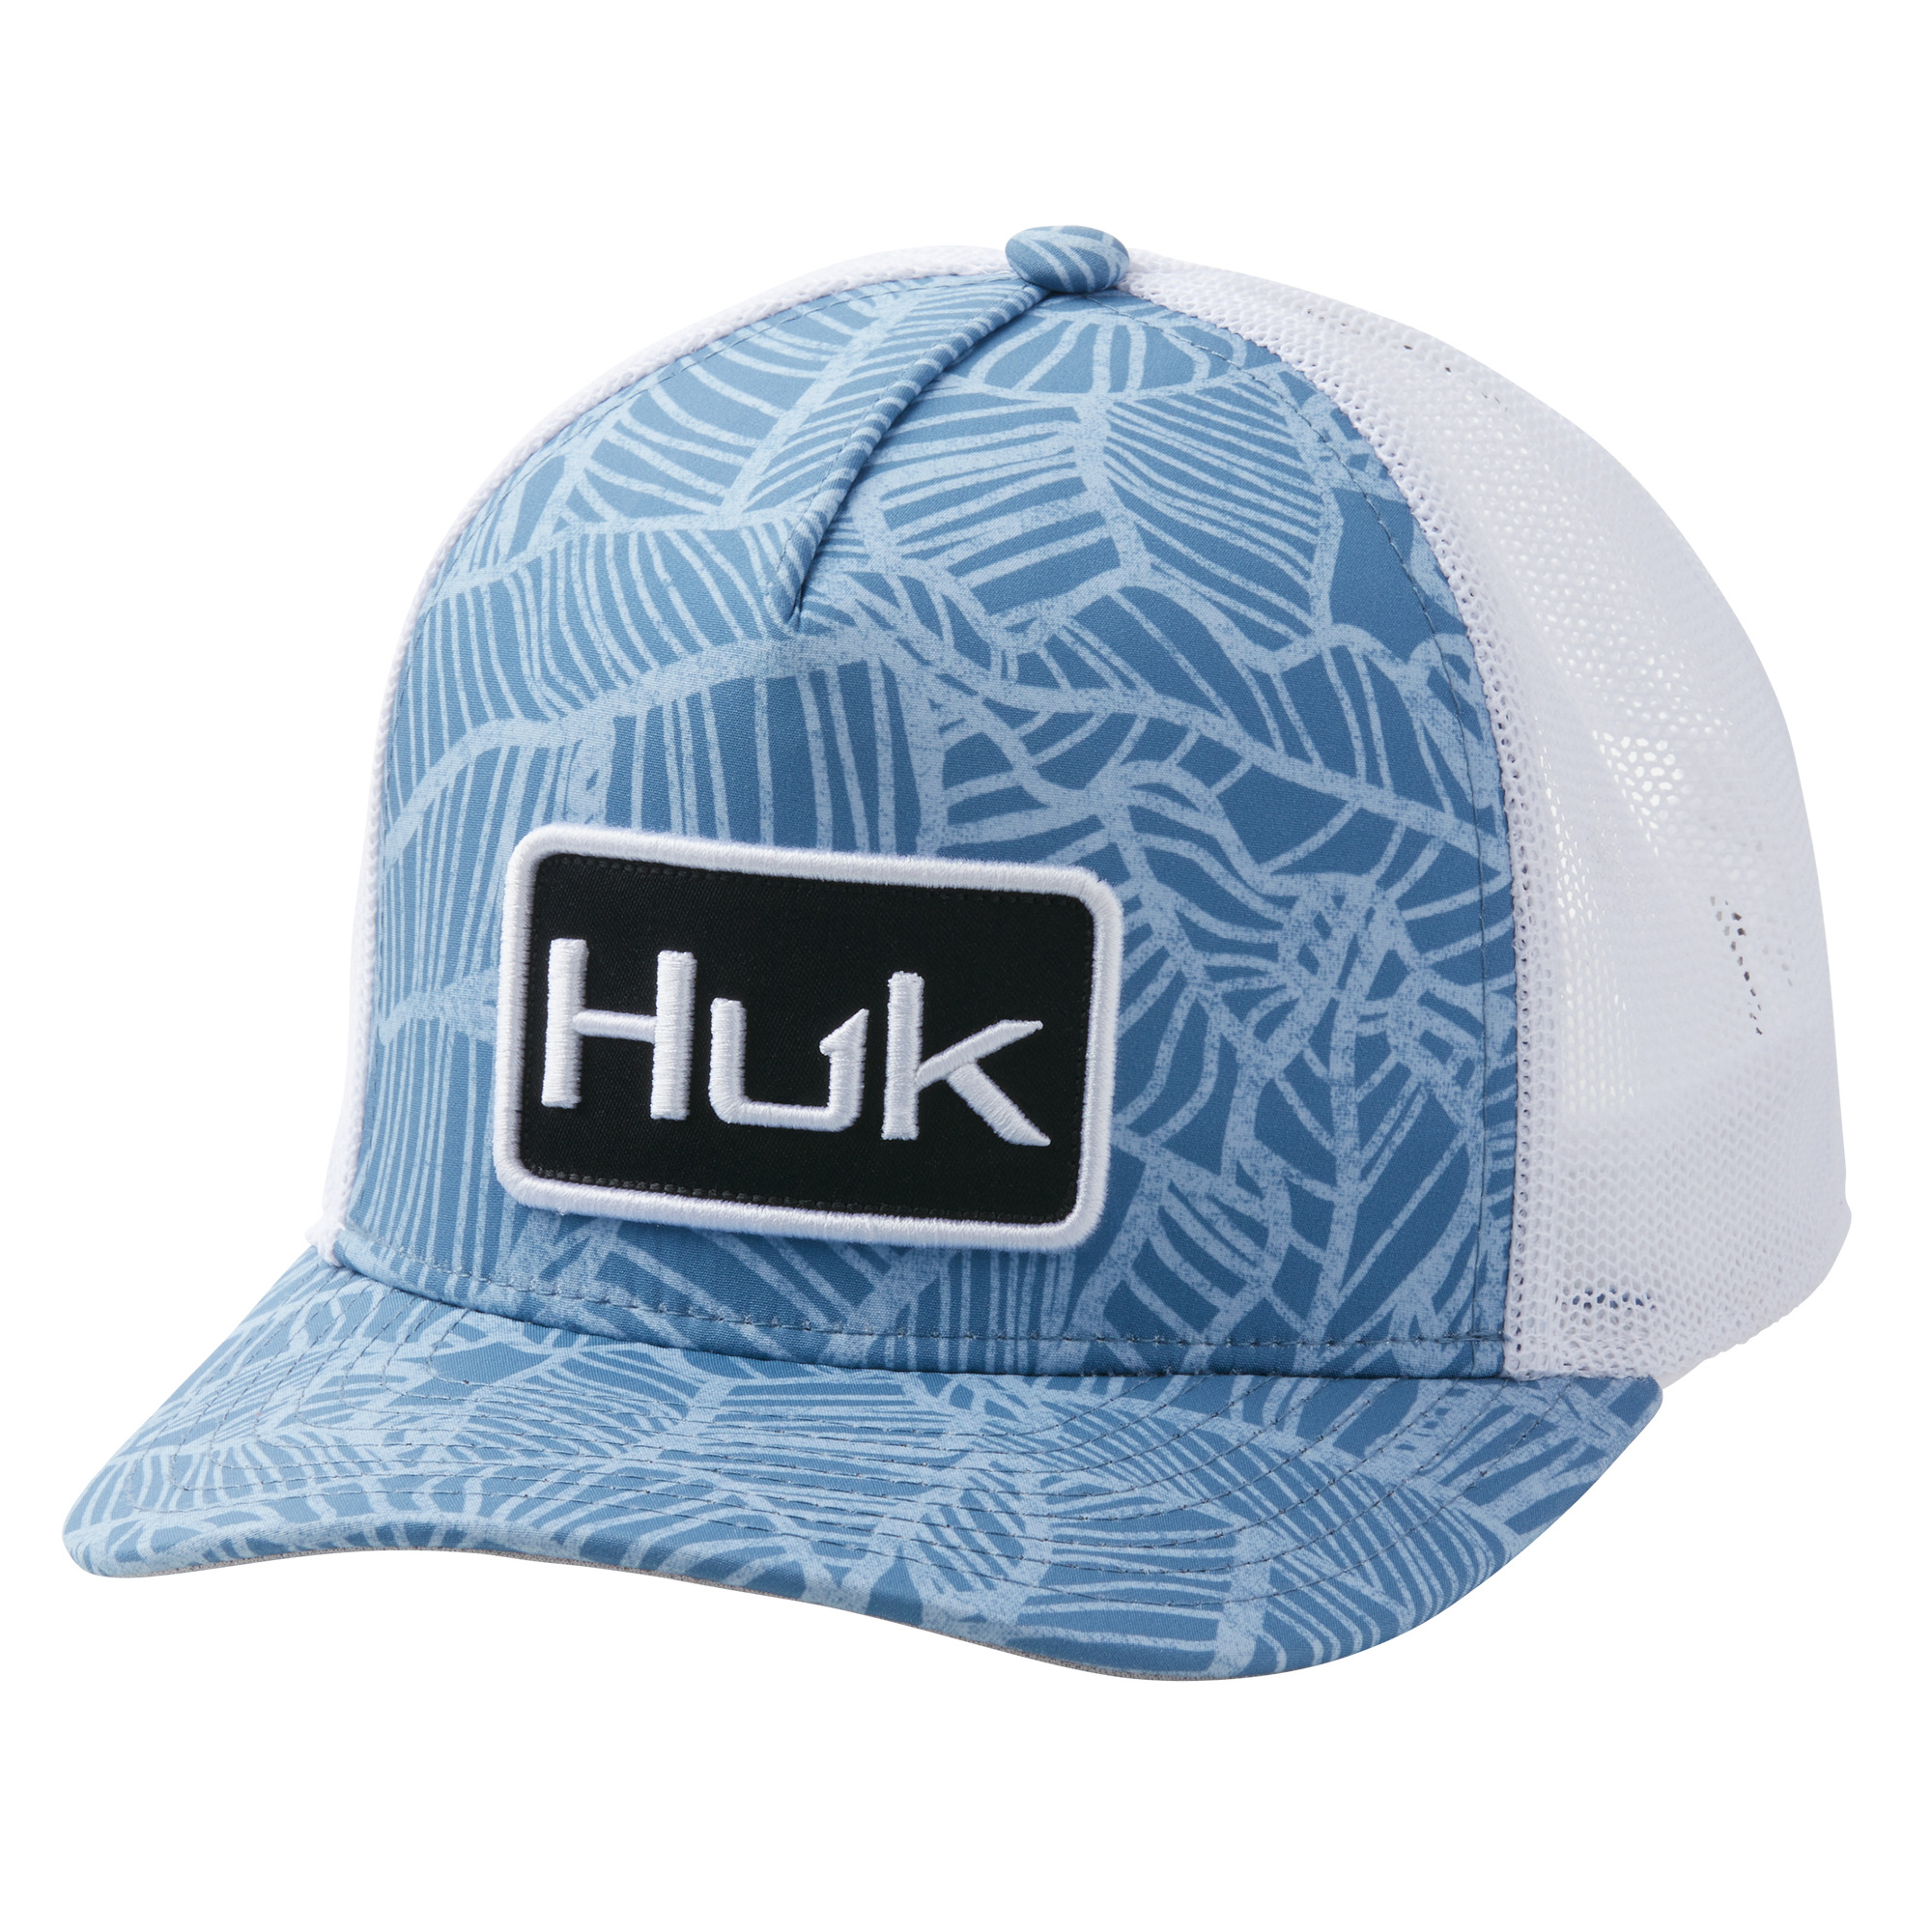 Huk Linear Leaf Trucker Hat (Women's)